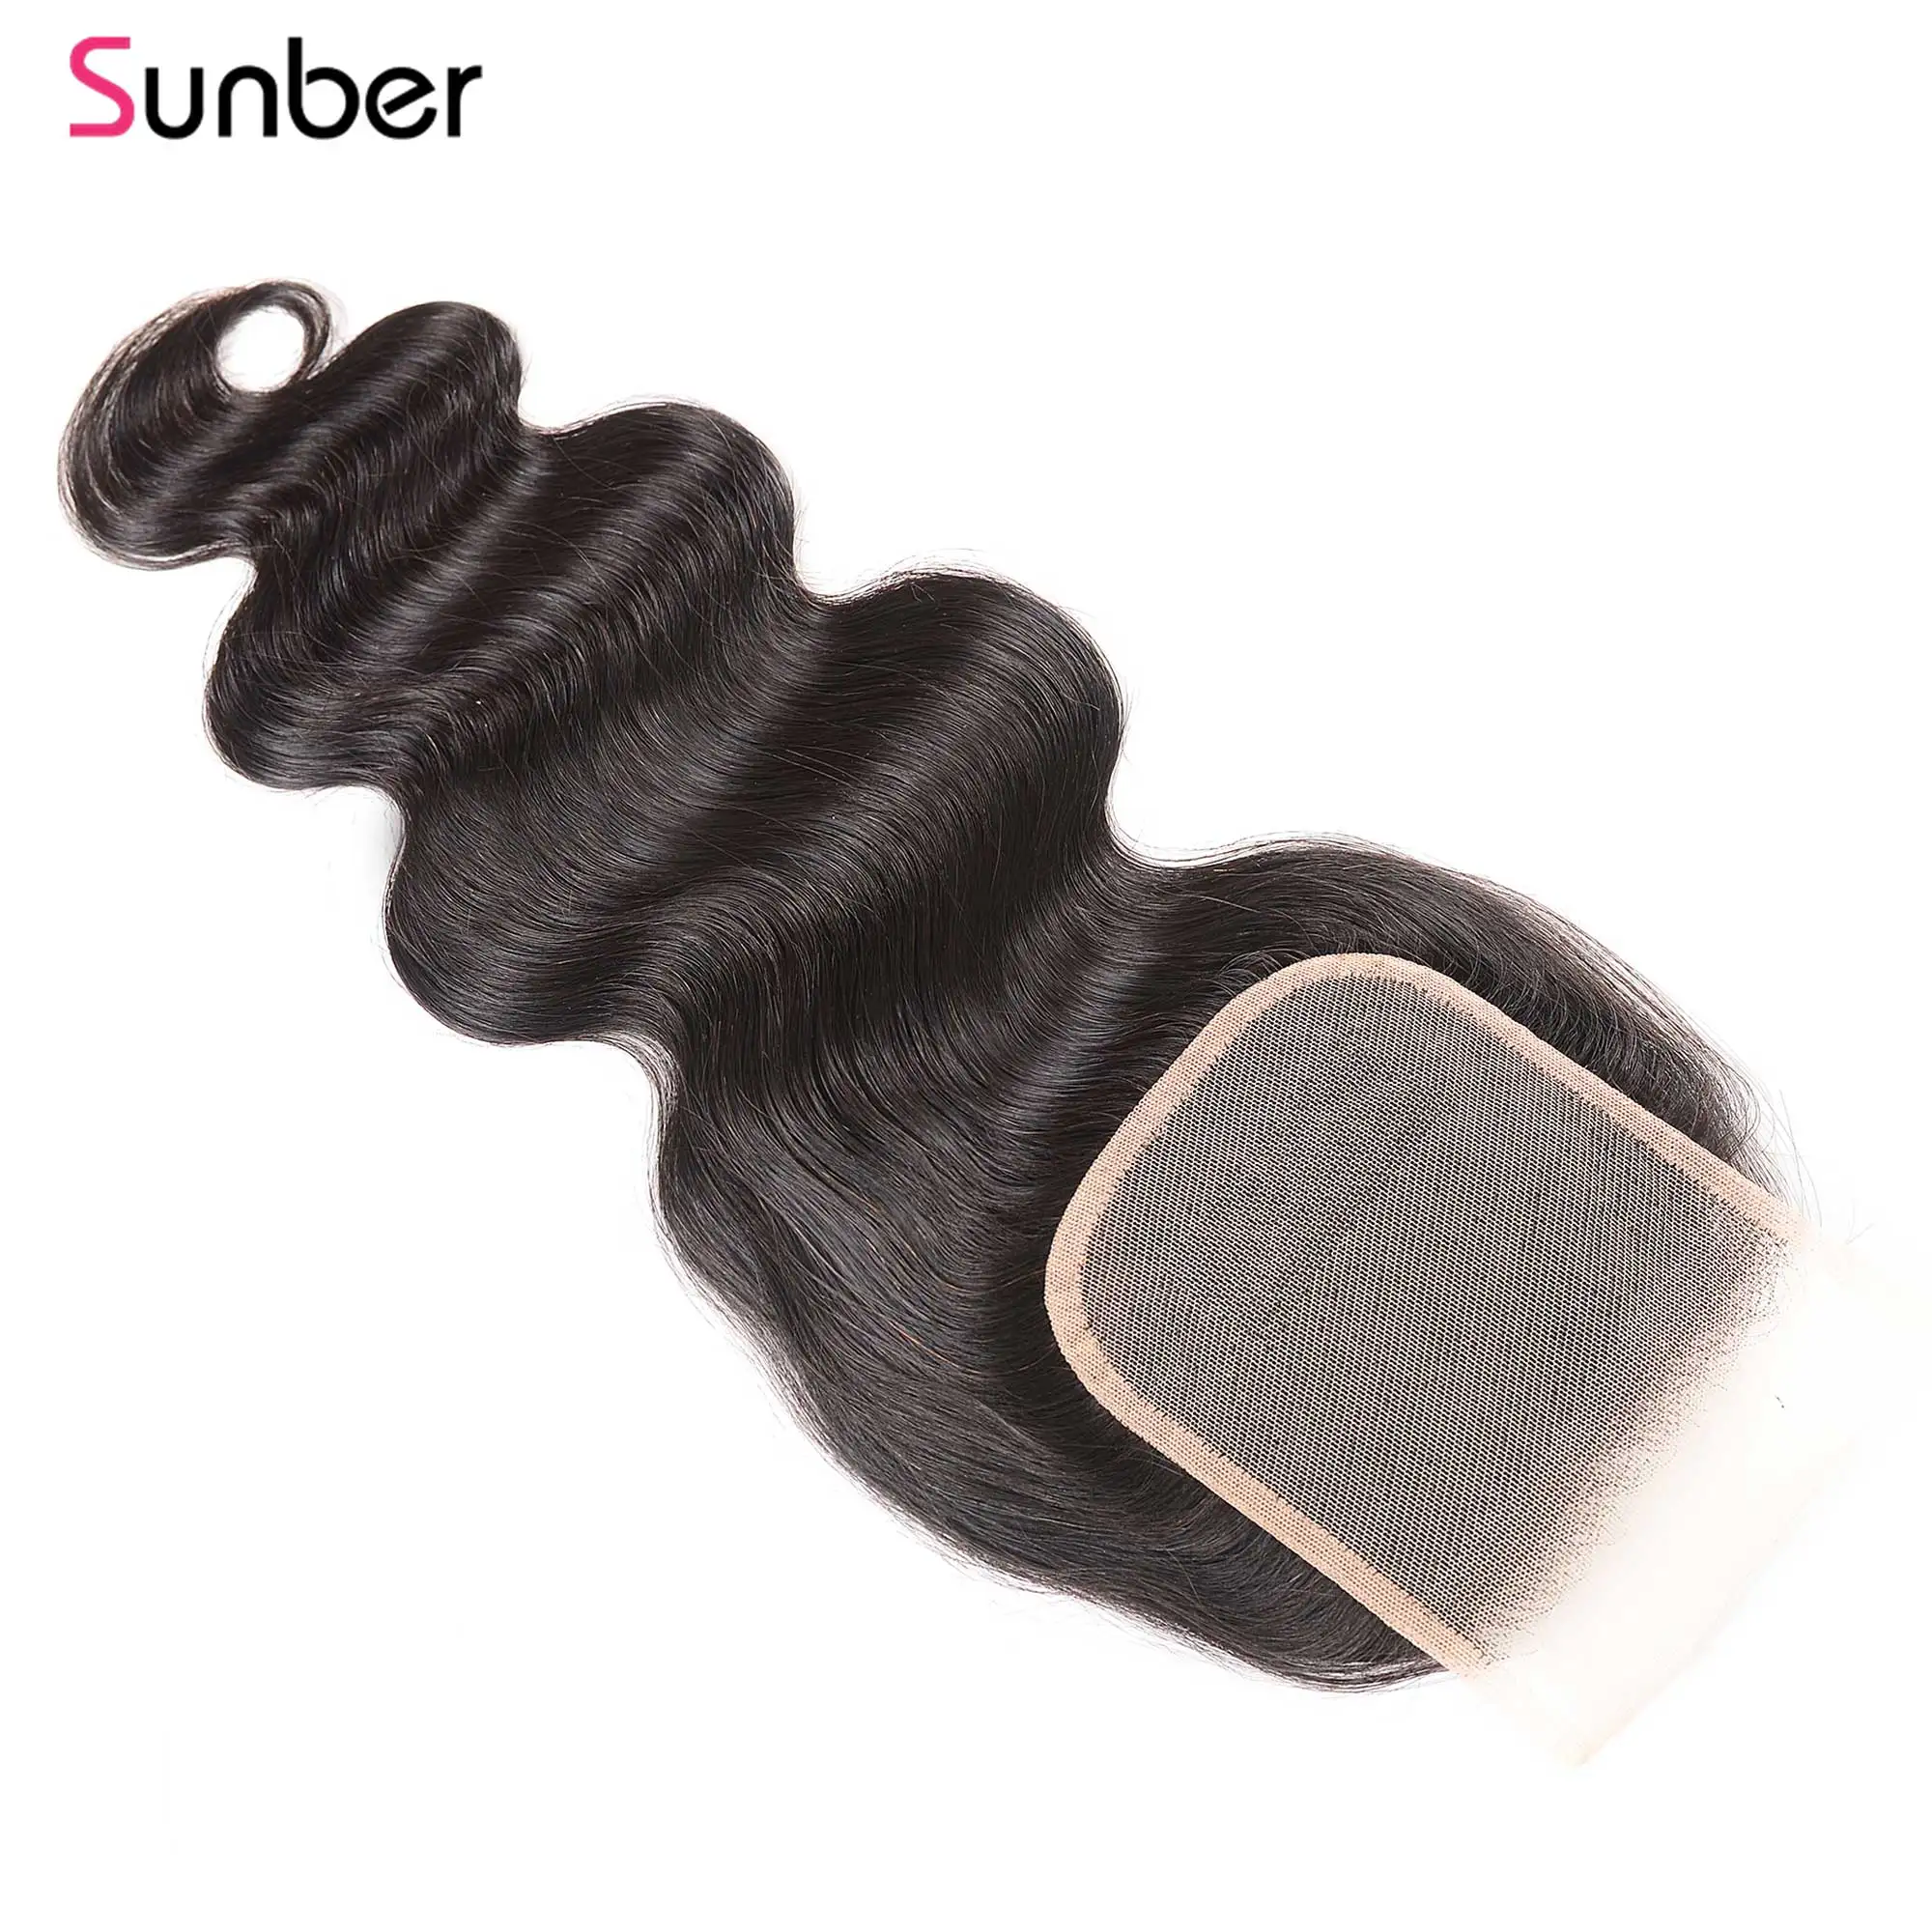 Sunber волосы перуанские волнистые прозрачные кружева закрытие remy волосы часть 4x4 10-20 дюймов наращивание волос